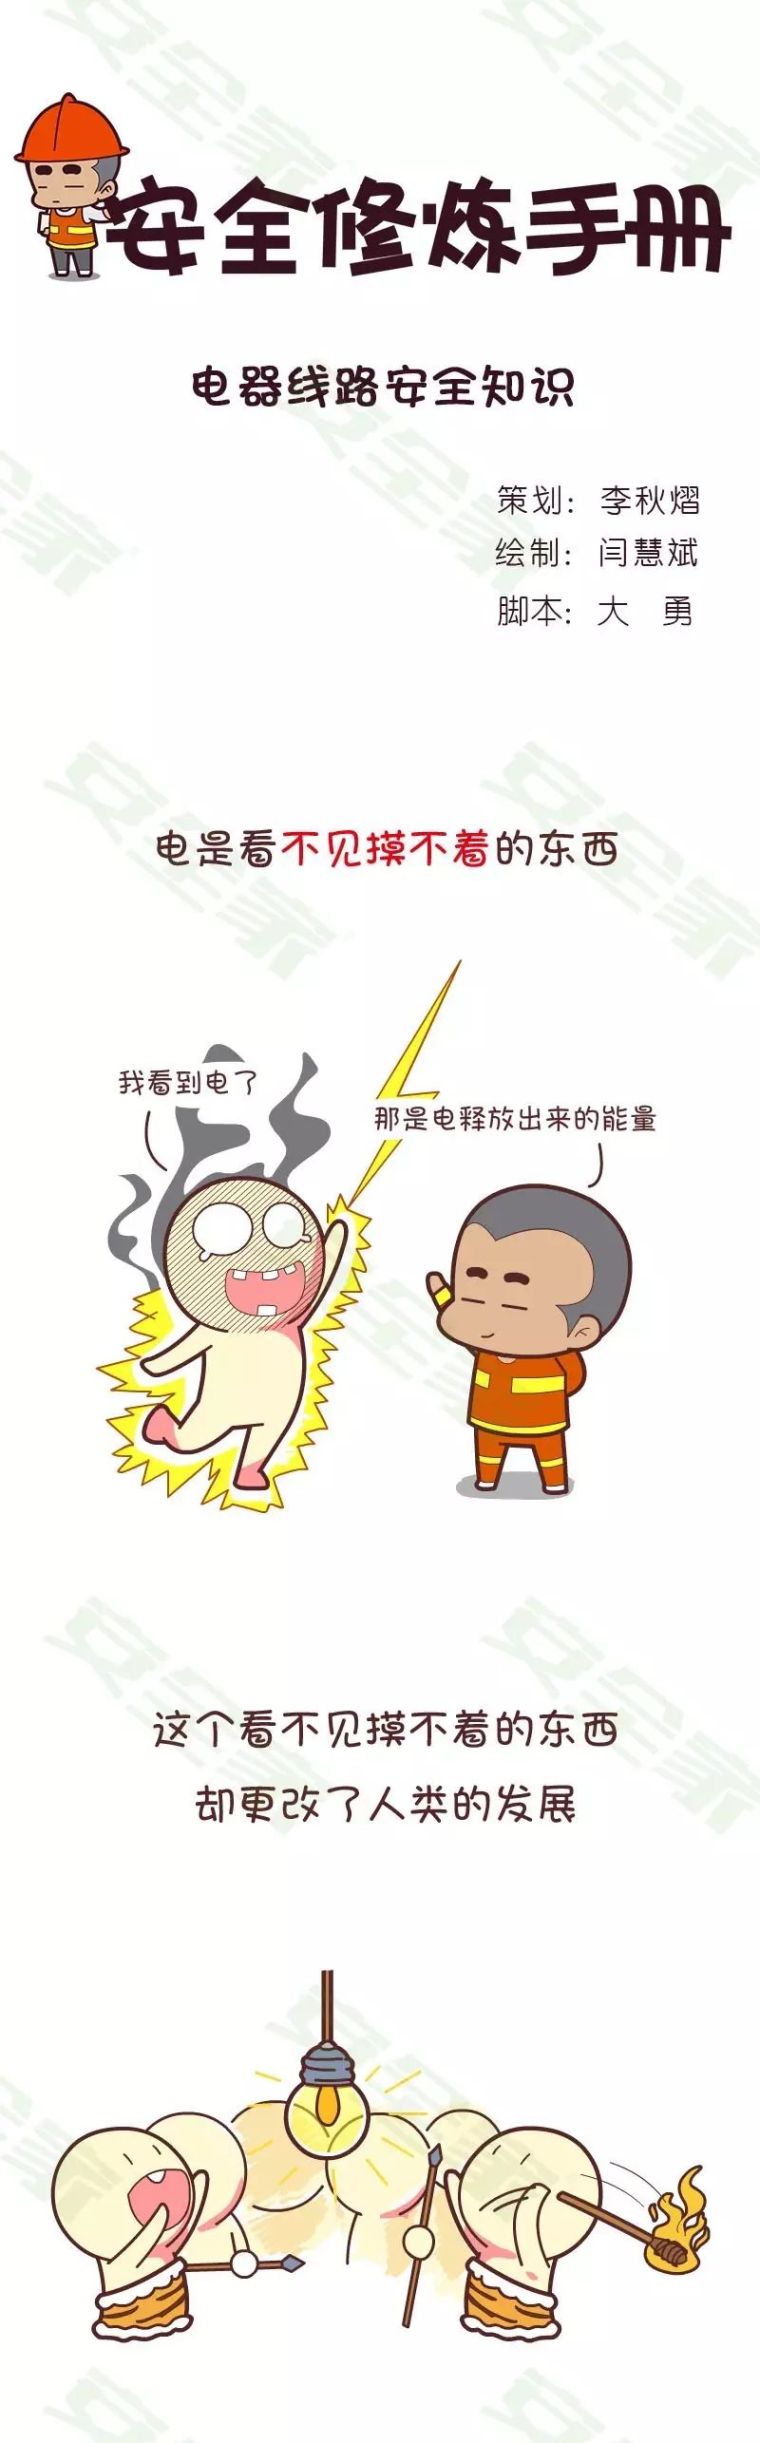 安全丨漫画解读电气安全小betway必威官方网站
_2